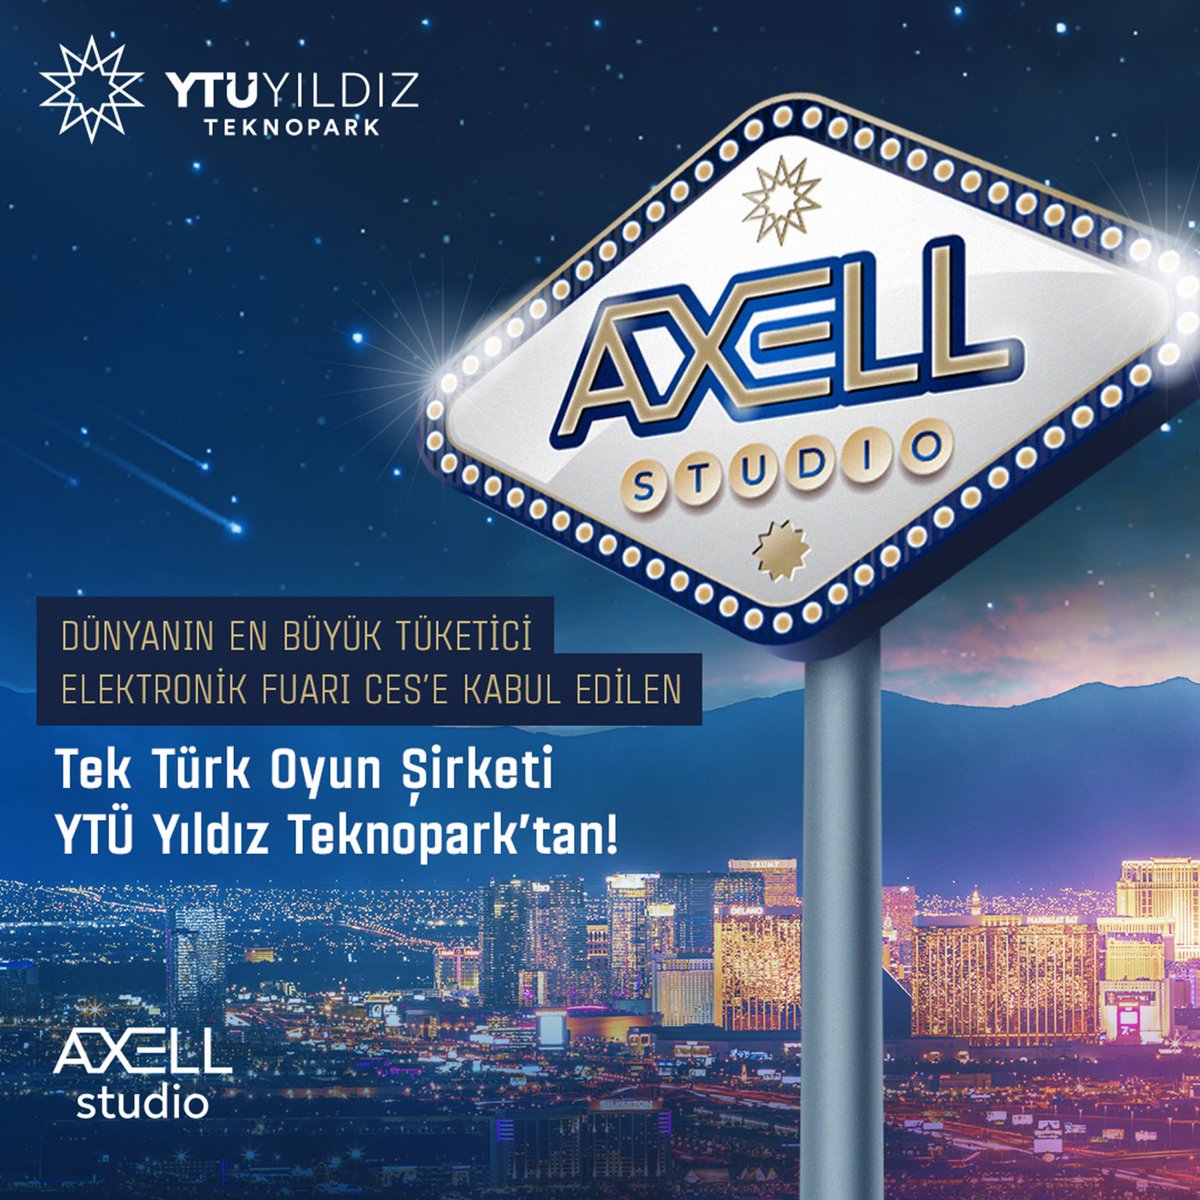 Türk oyun firması #AxellStudio #CES'te

Yerli oyun şirketi Axell Studio, Türk oyun sektöründe bir ilke imza attı. Axell Studio, CES fuarına Türkiye'den kabul edilen ilk Türk oyun firması oldu.